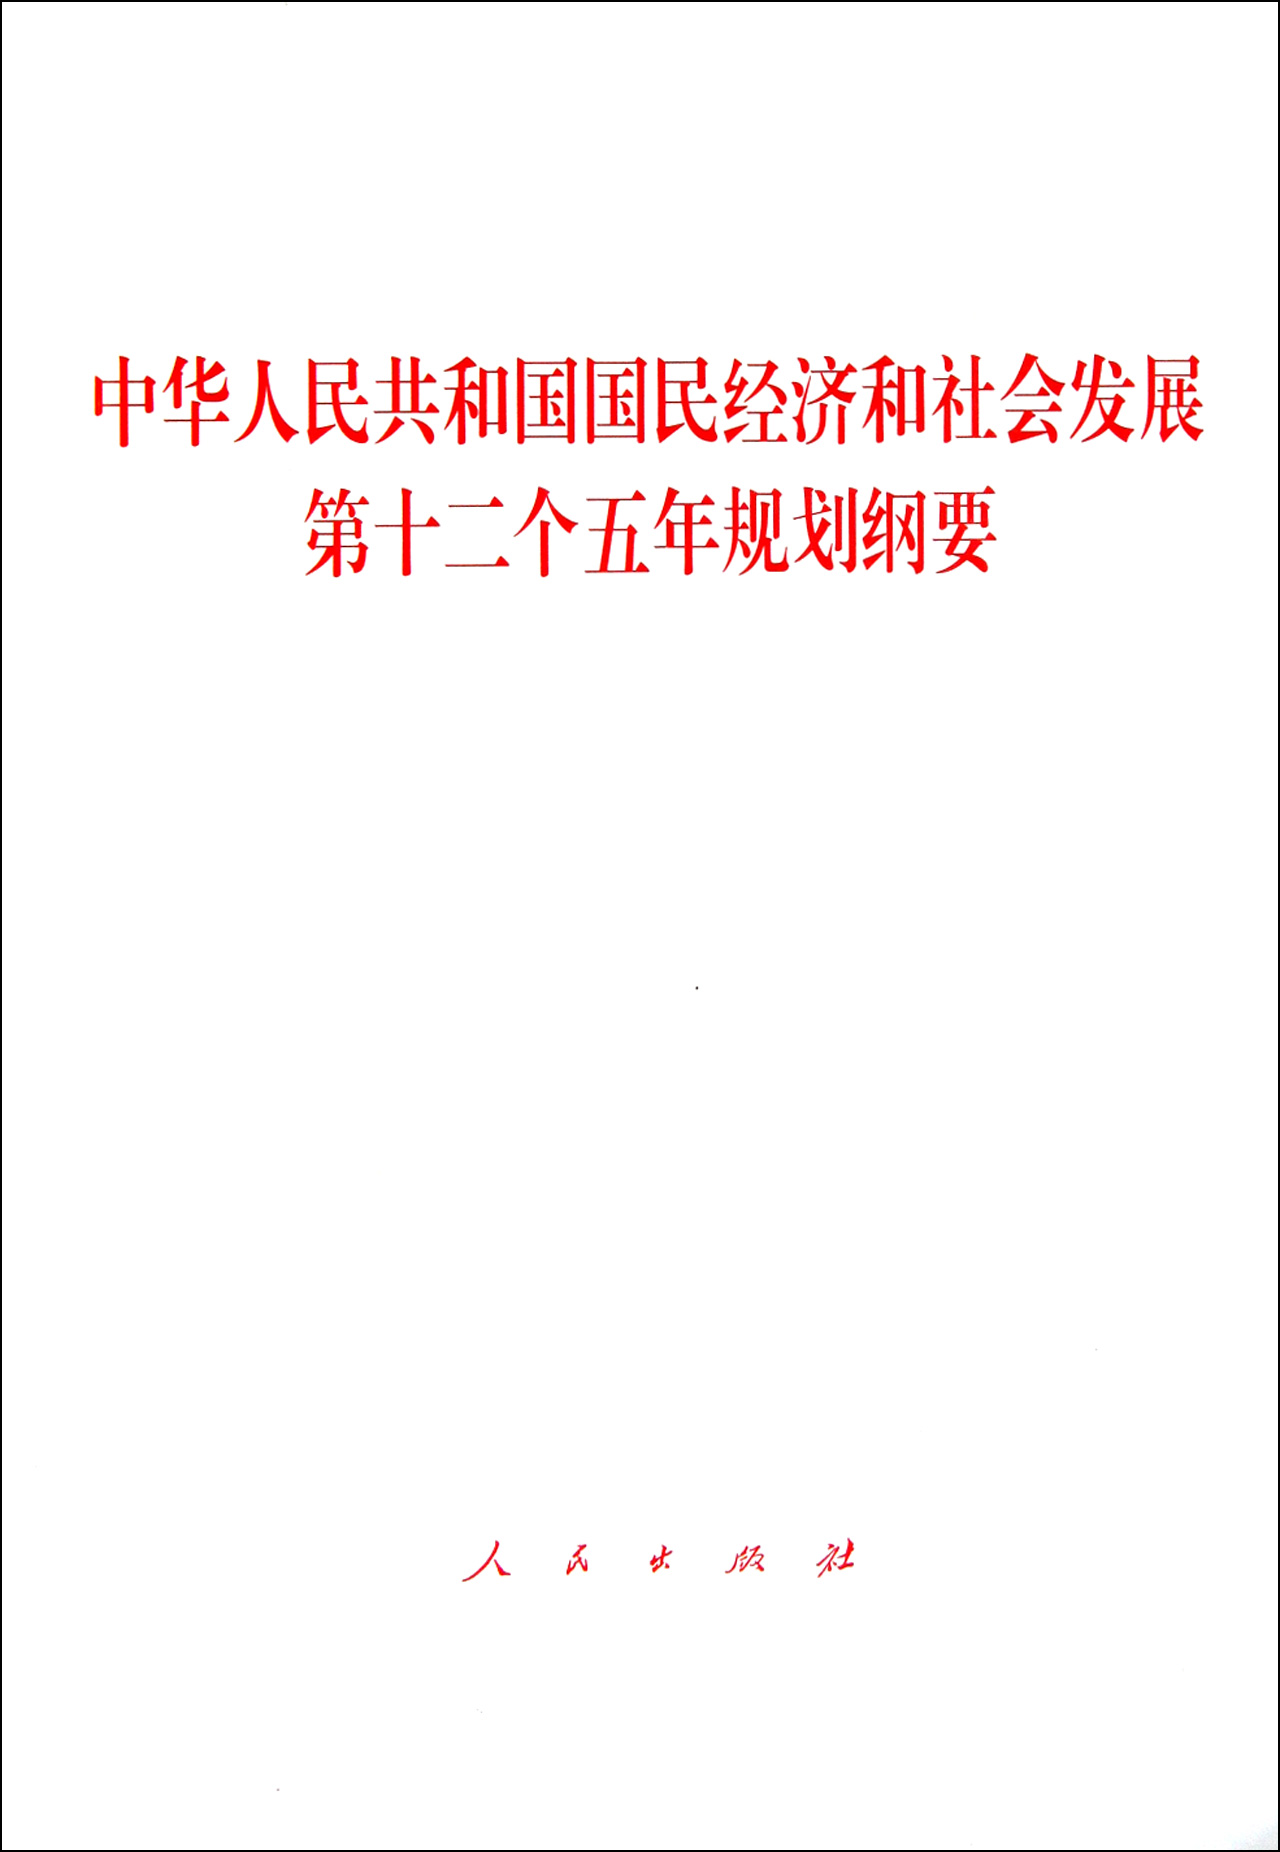 中華人民共和國國民經濟和社會發展第十二個五年規劃綱要(十二五規劃)